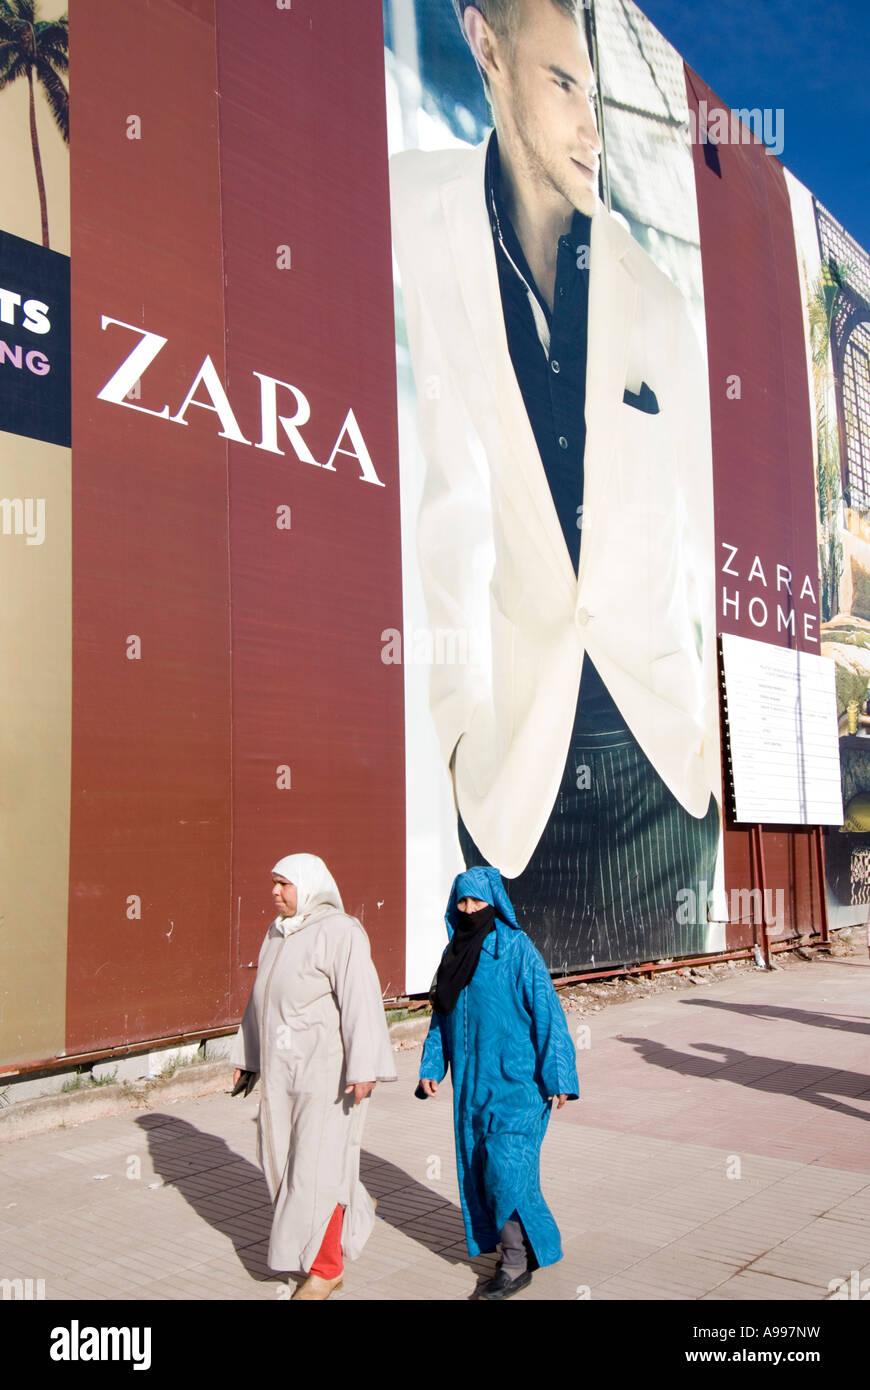 Cartello pubblicitario europeo di una catena di abbigliamento store Zara in Gueliz marrakech marocco Foto Stock